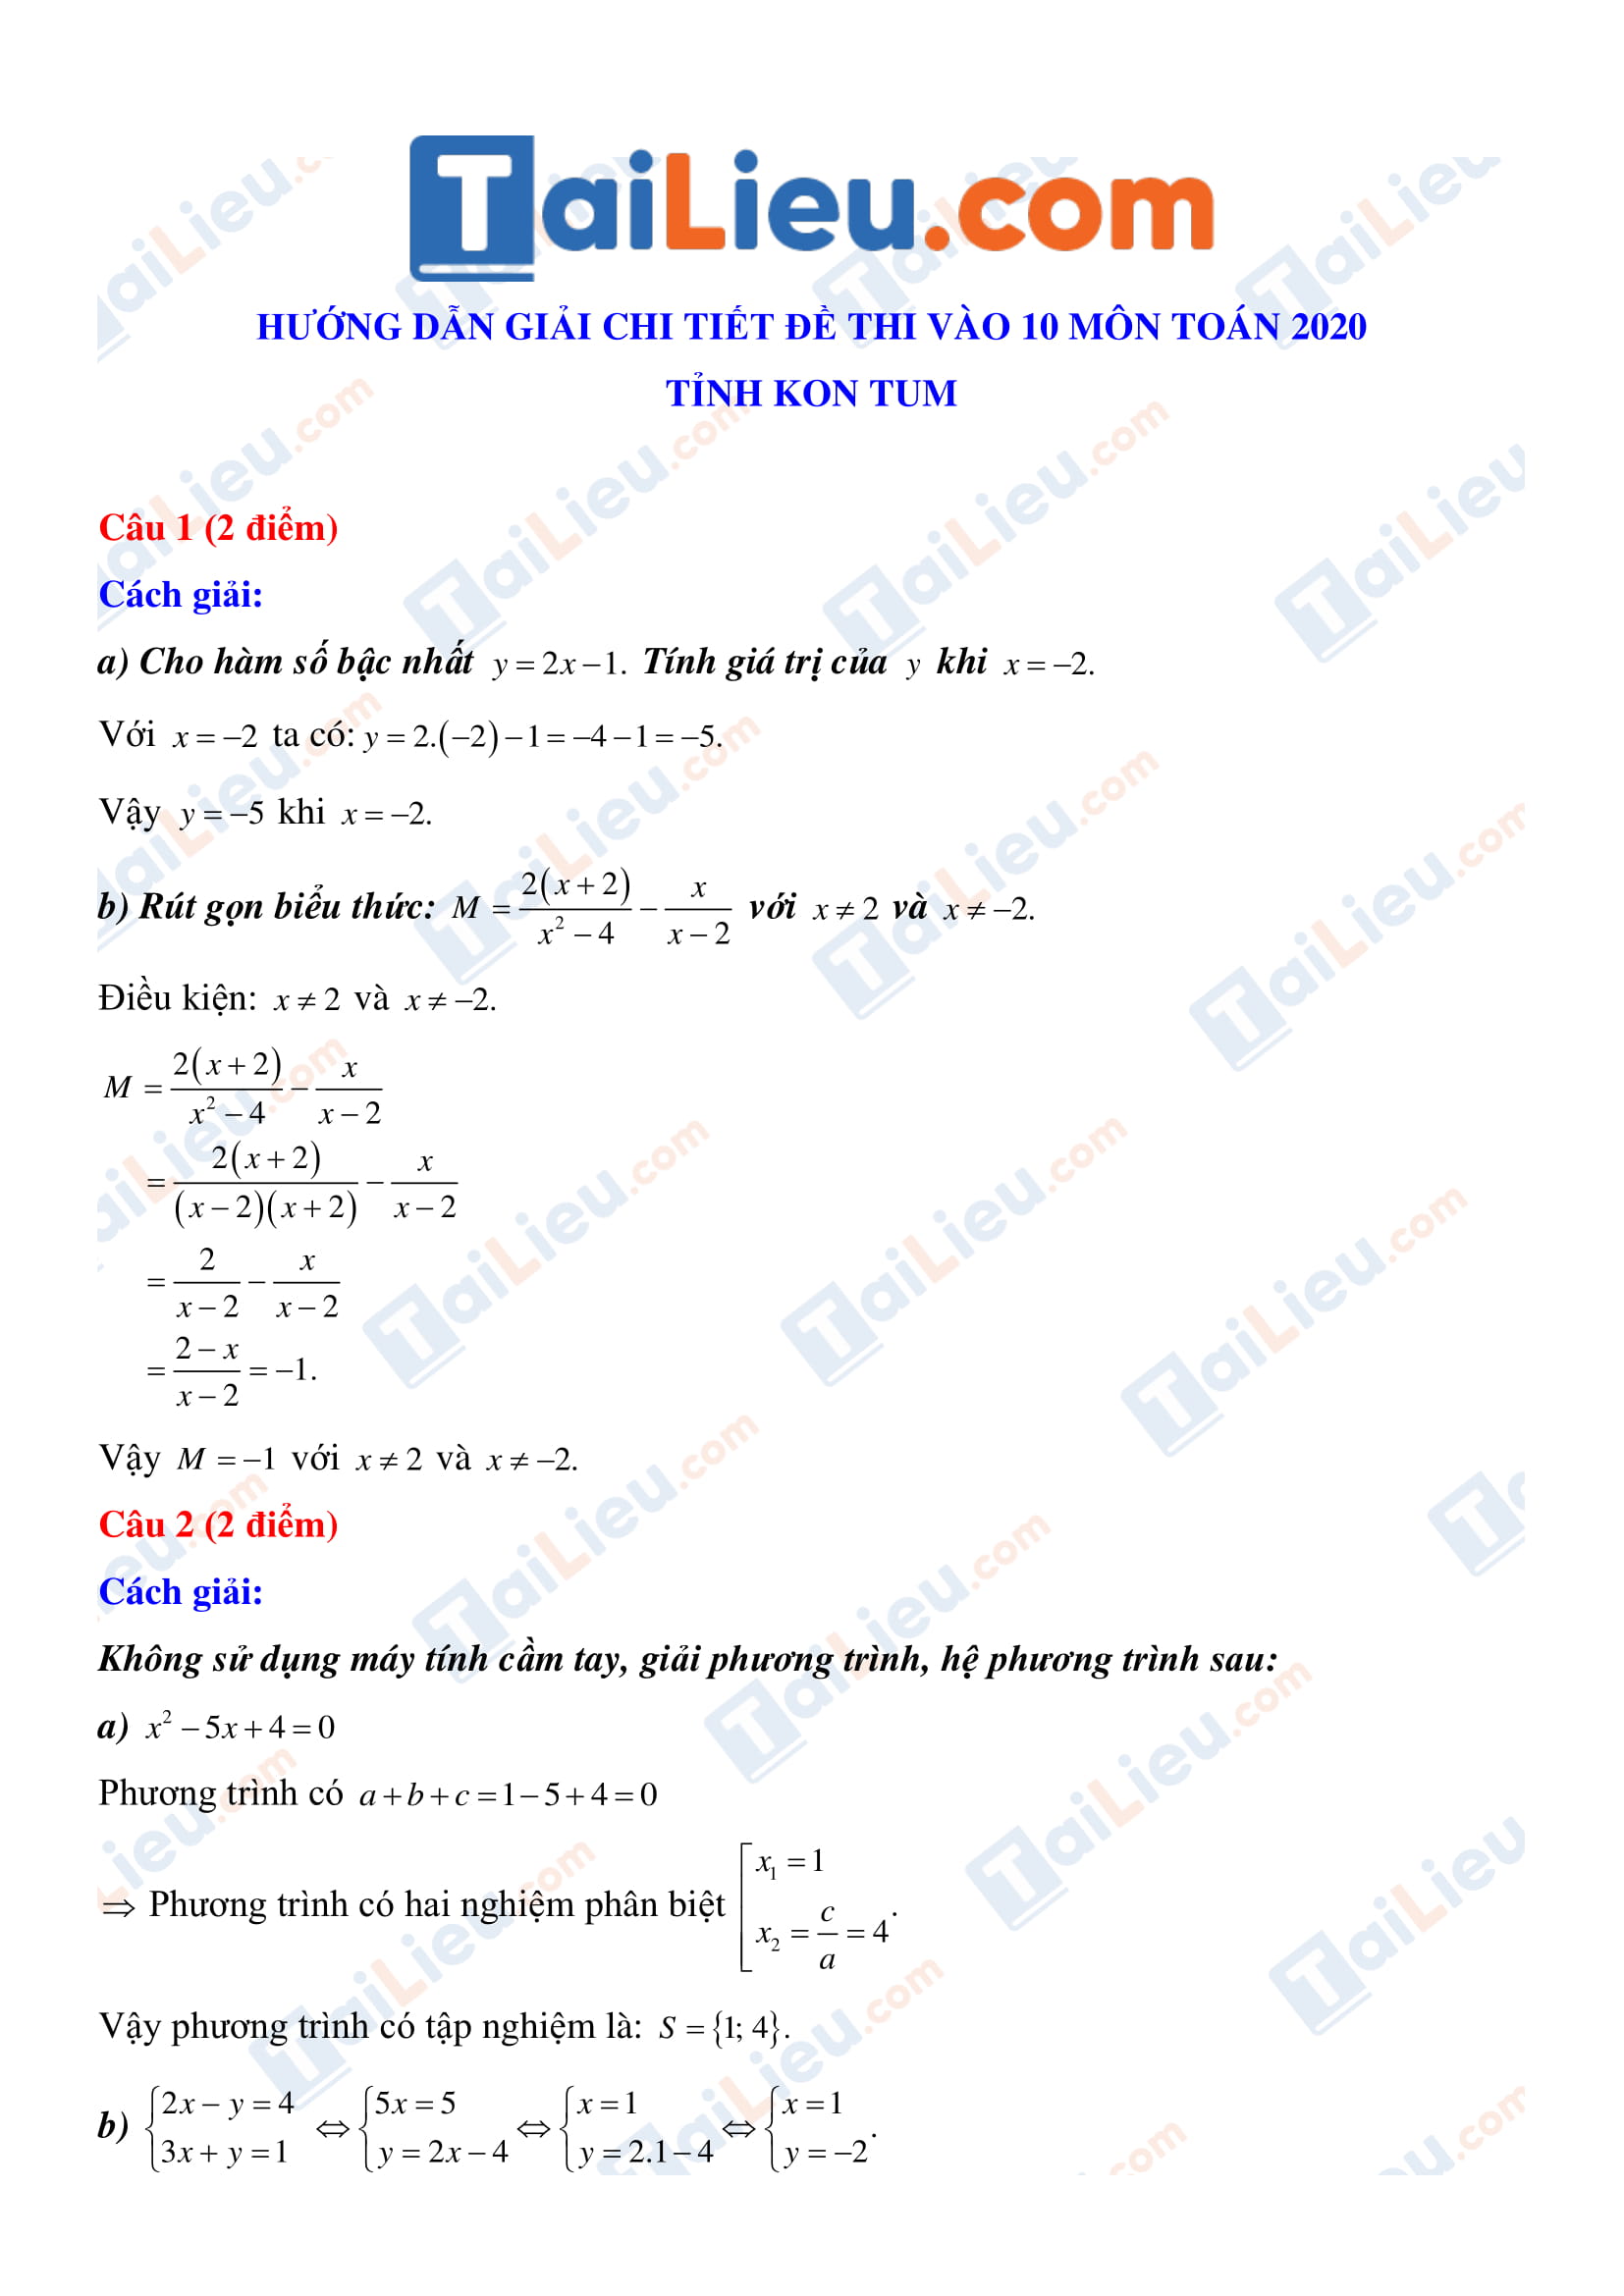 Đáp án môn toán thi vào lớp 10 tỉnh Kon Tum 2020_1